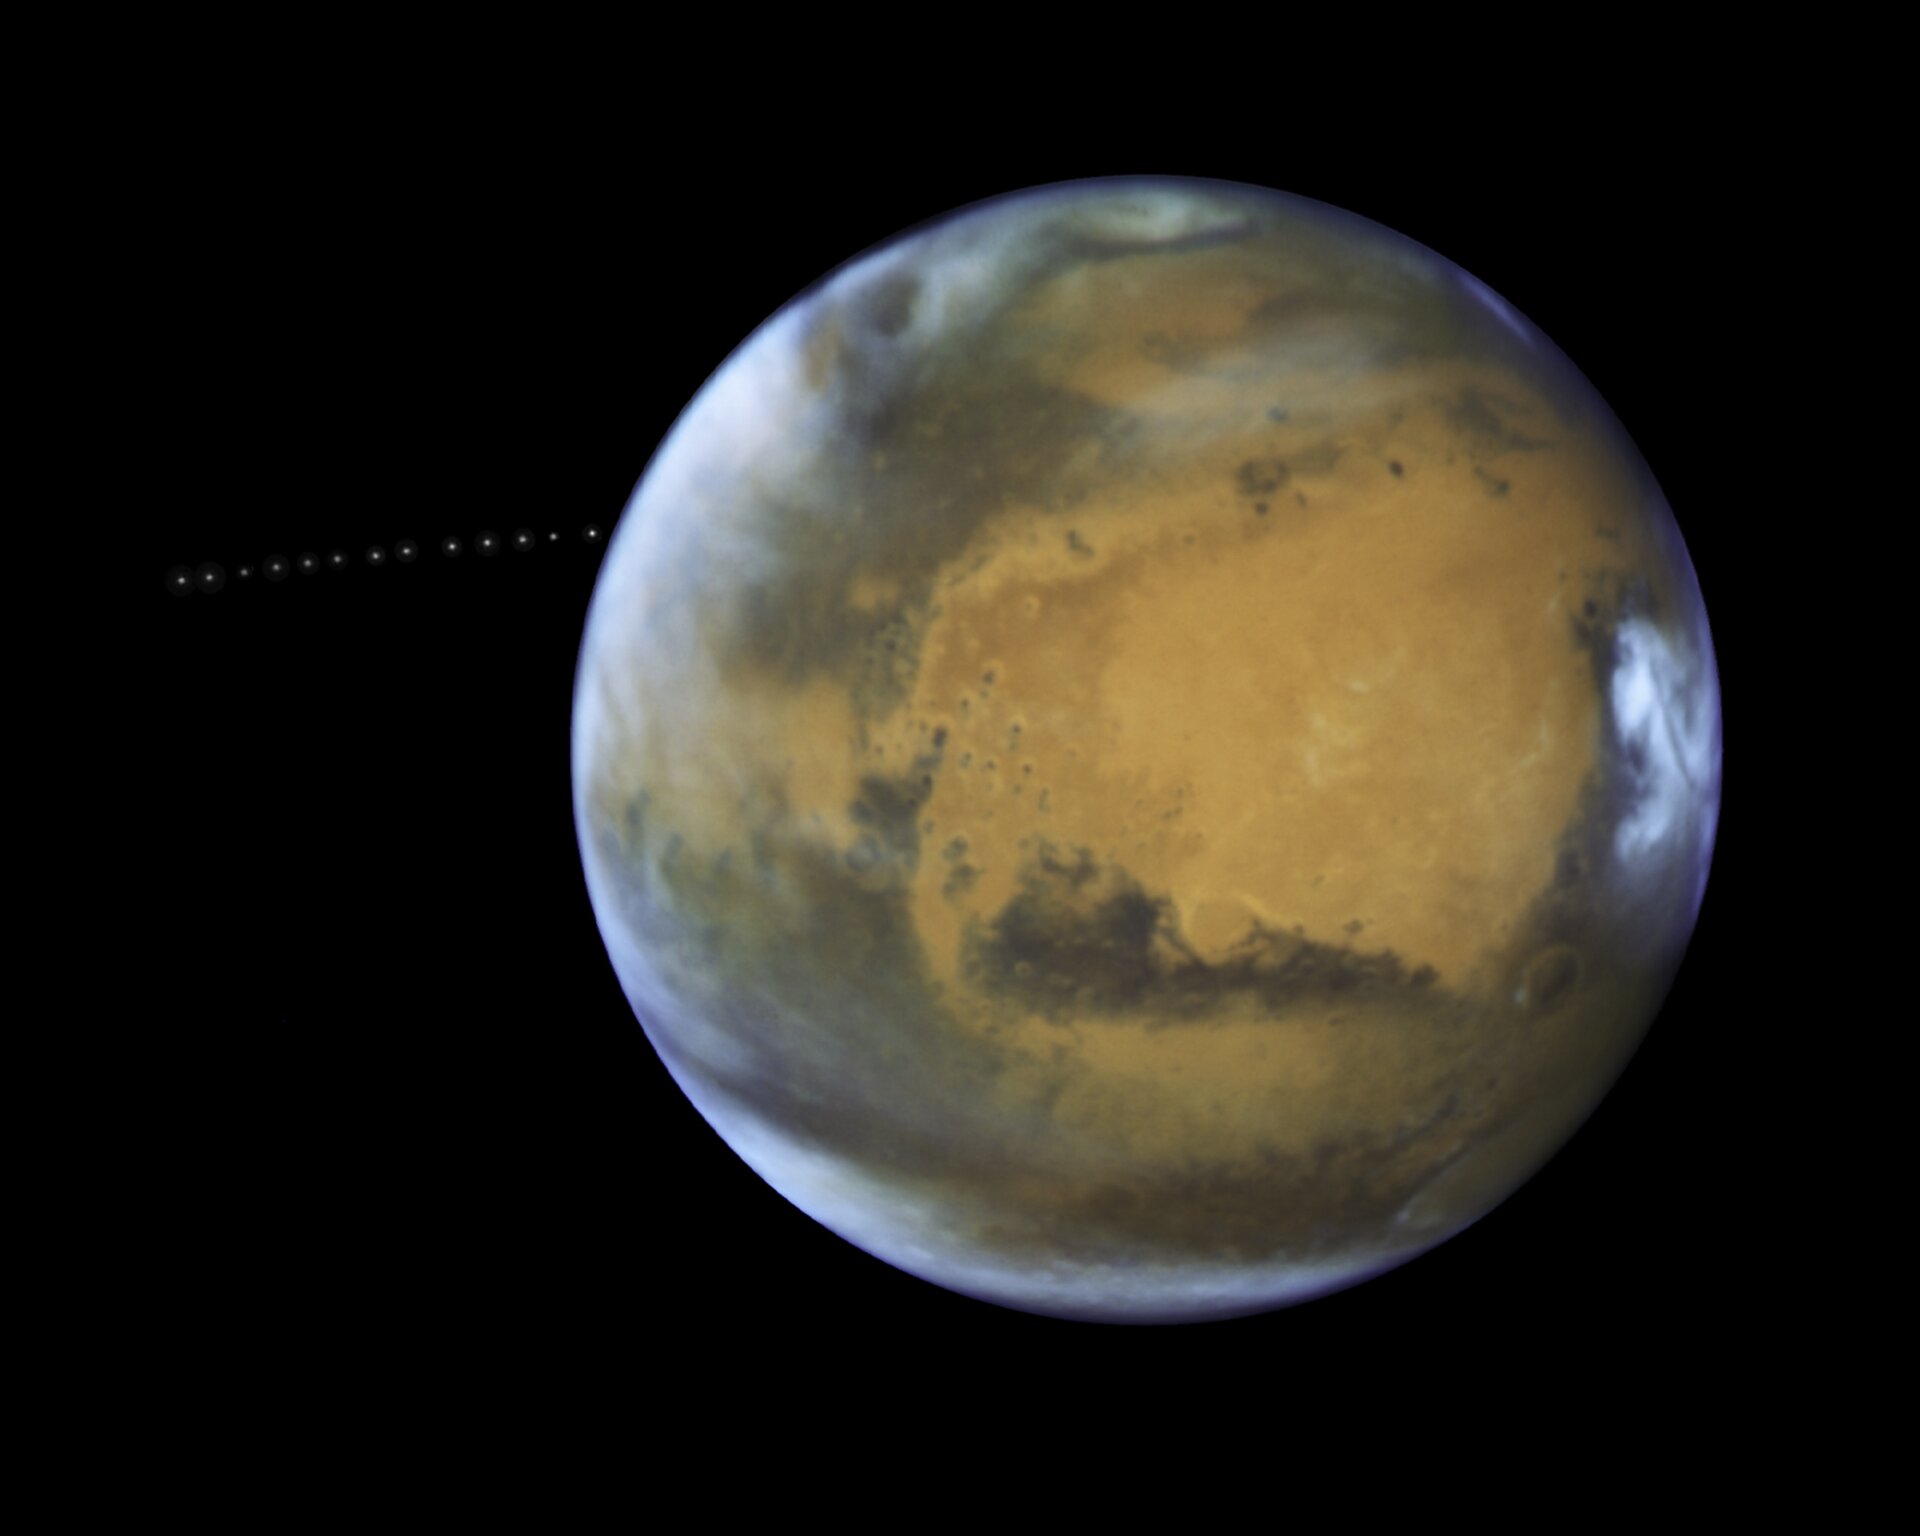 Phobos orbiting Mars